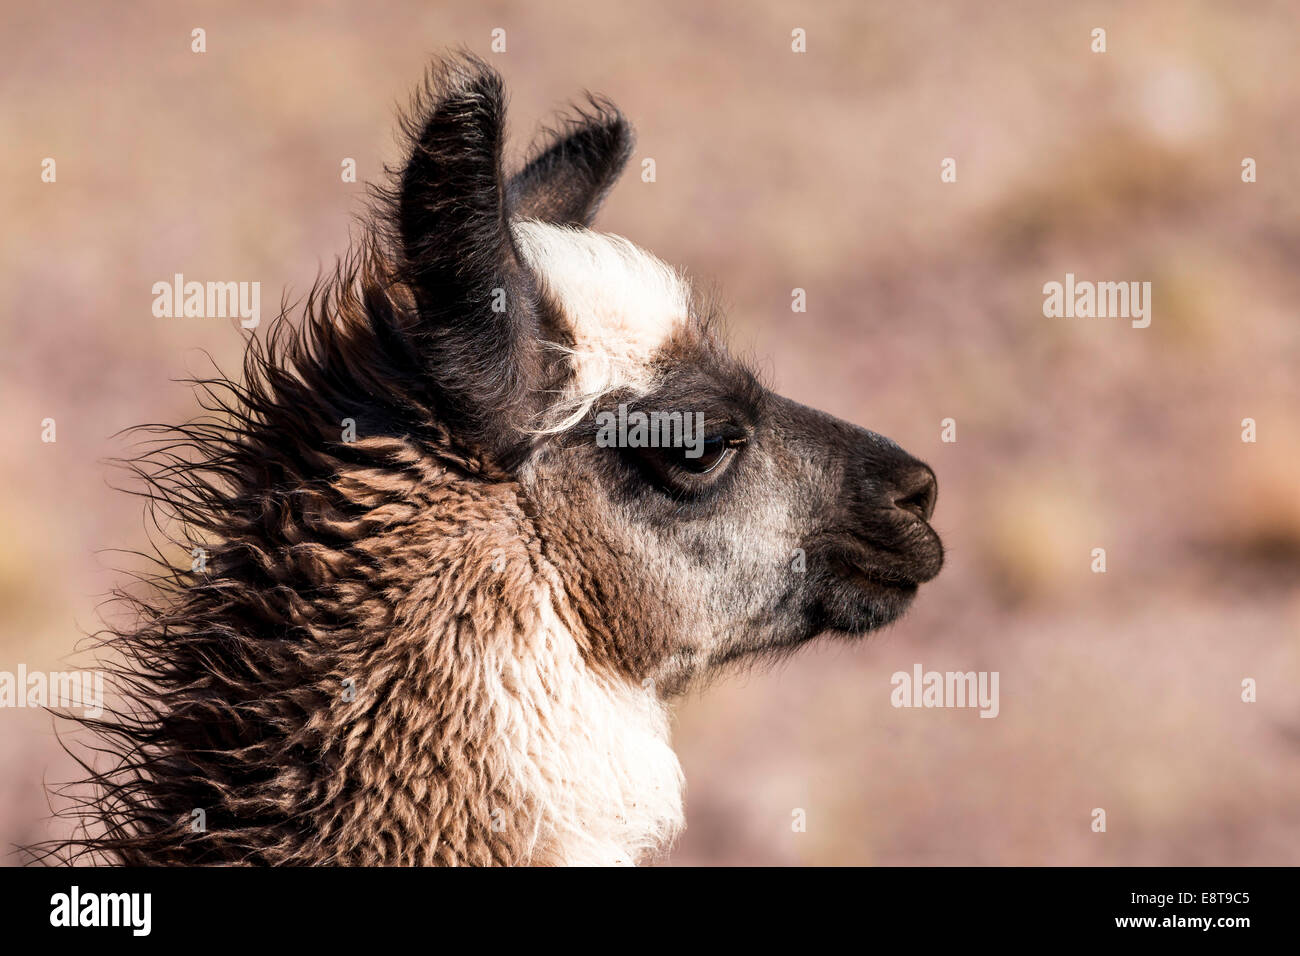 Le lama (Lama glama), Désert d'Atacama, Chili Banque D'Images